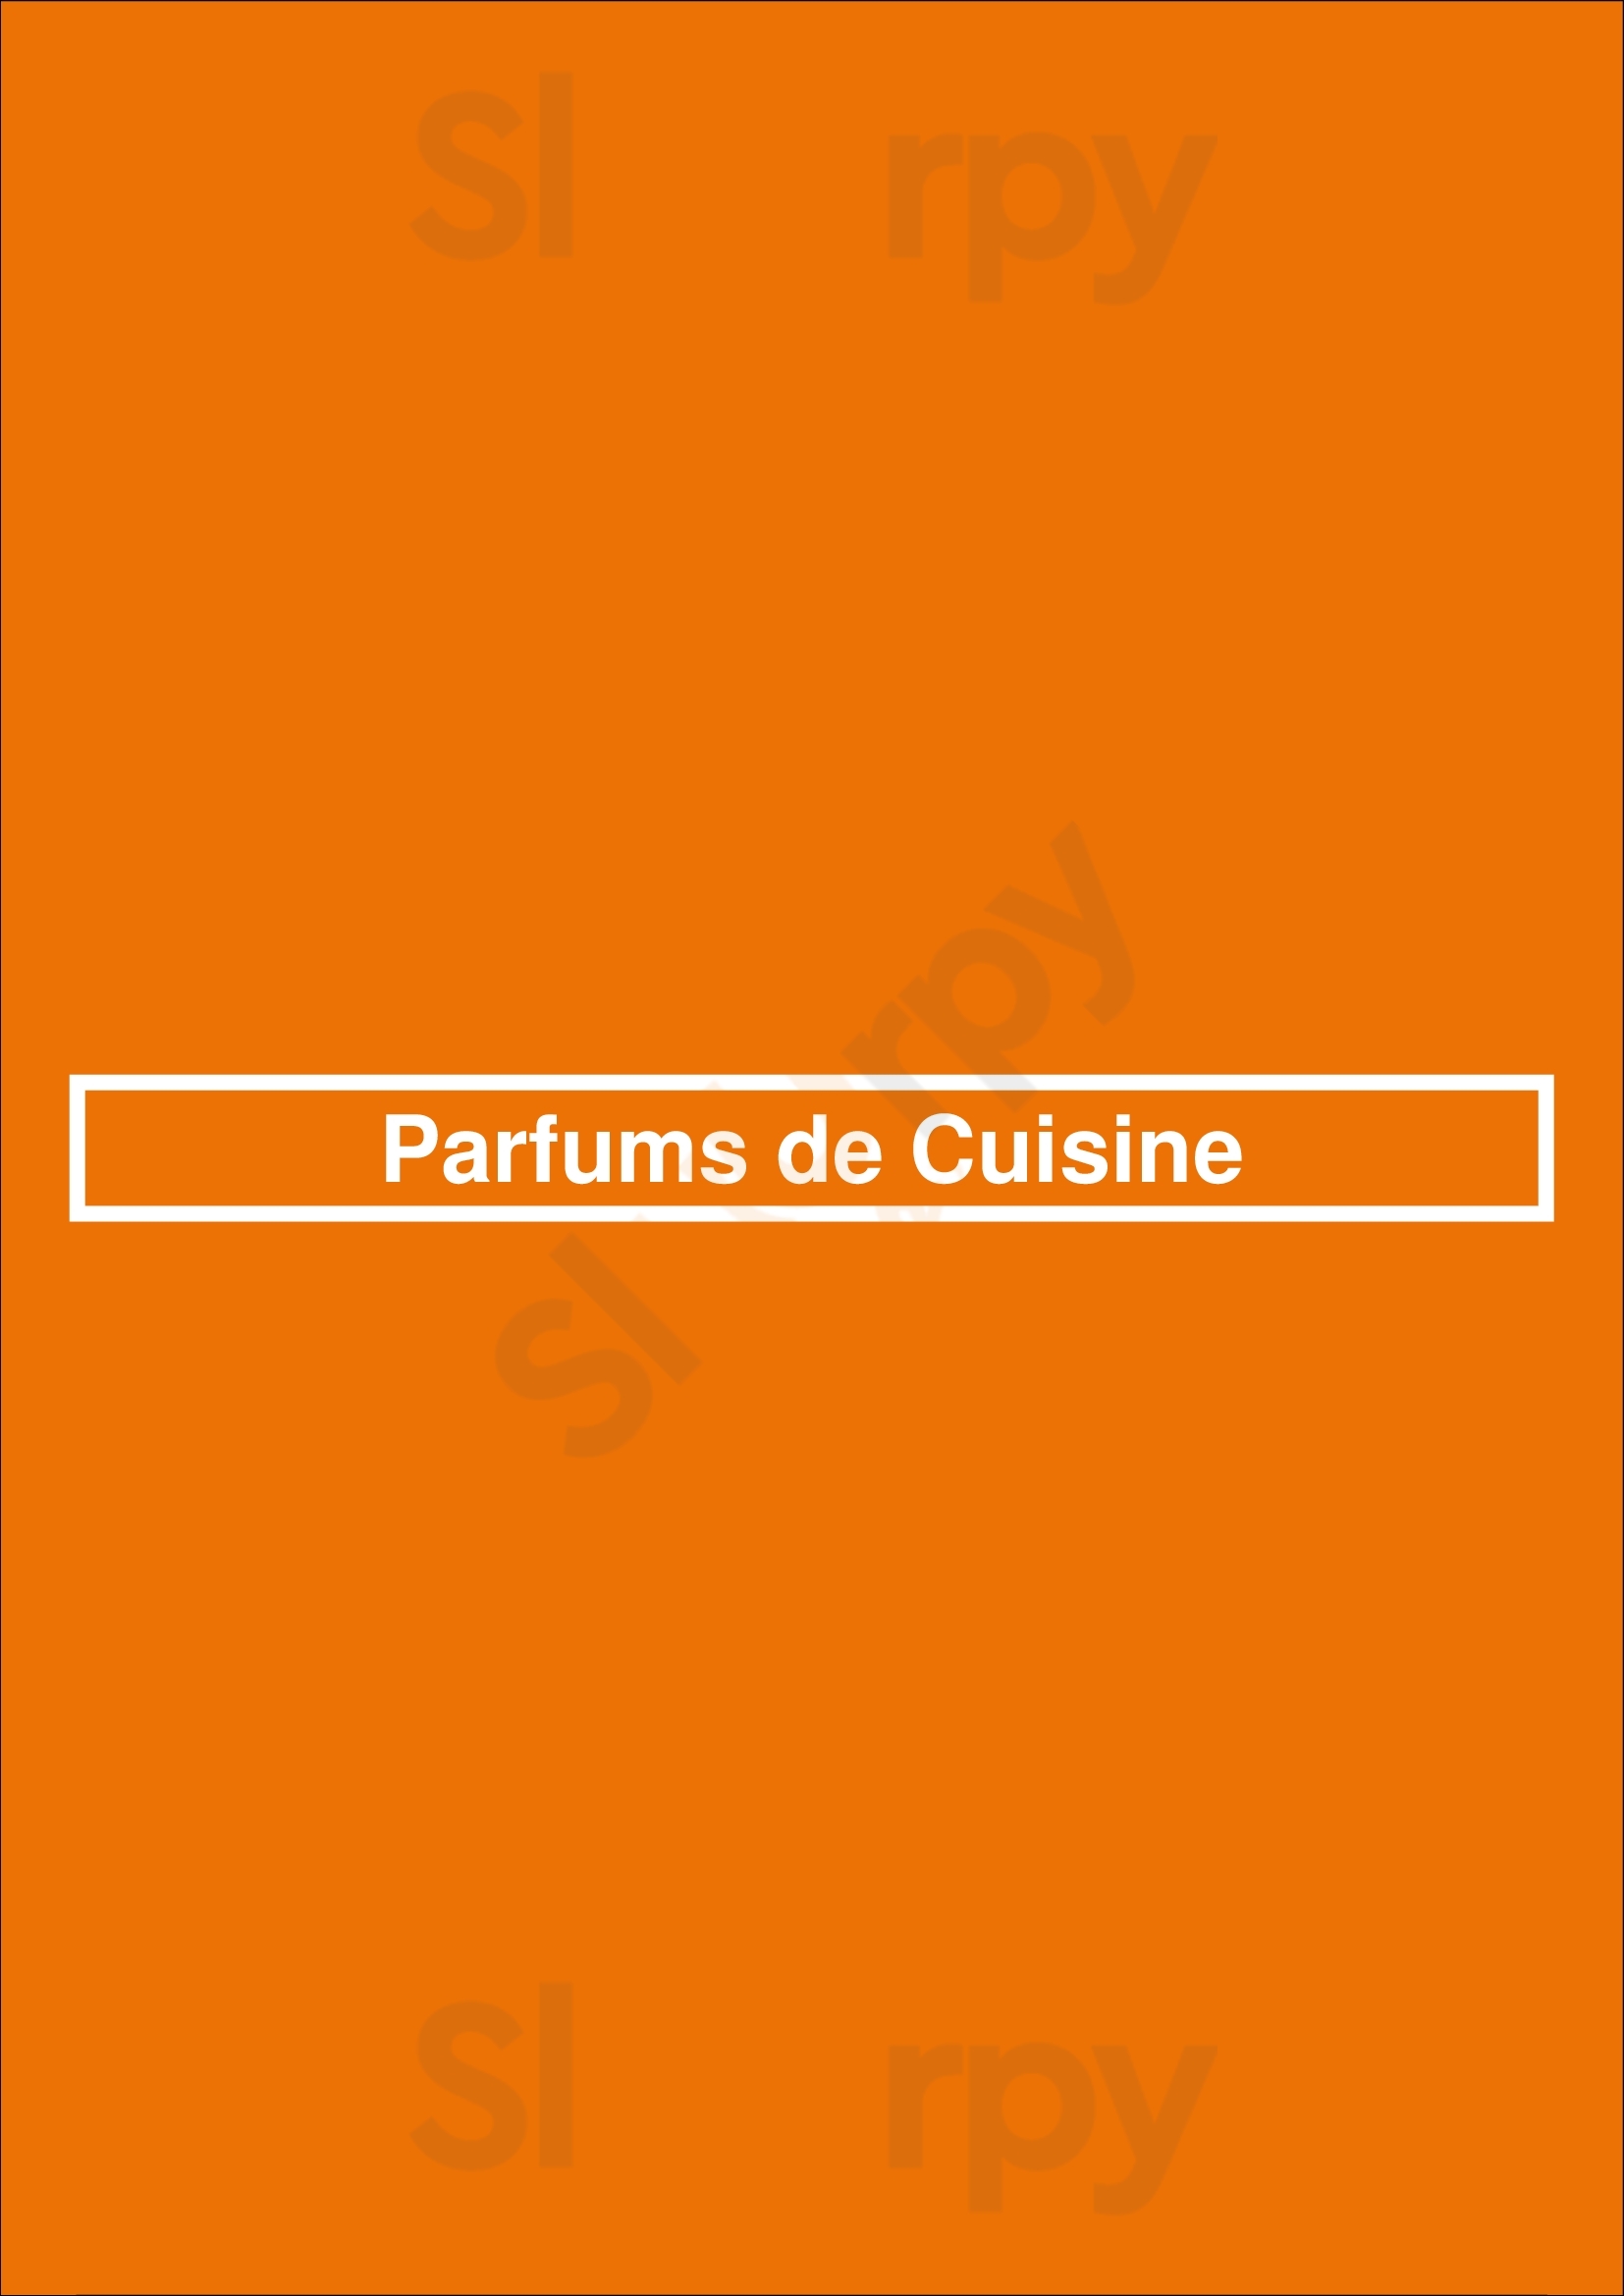 Parfums De Cuisine Namur Menu - 1